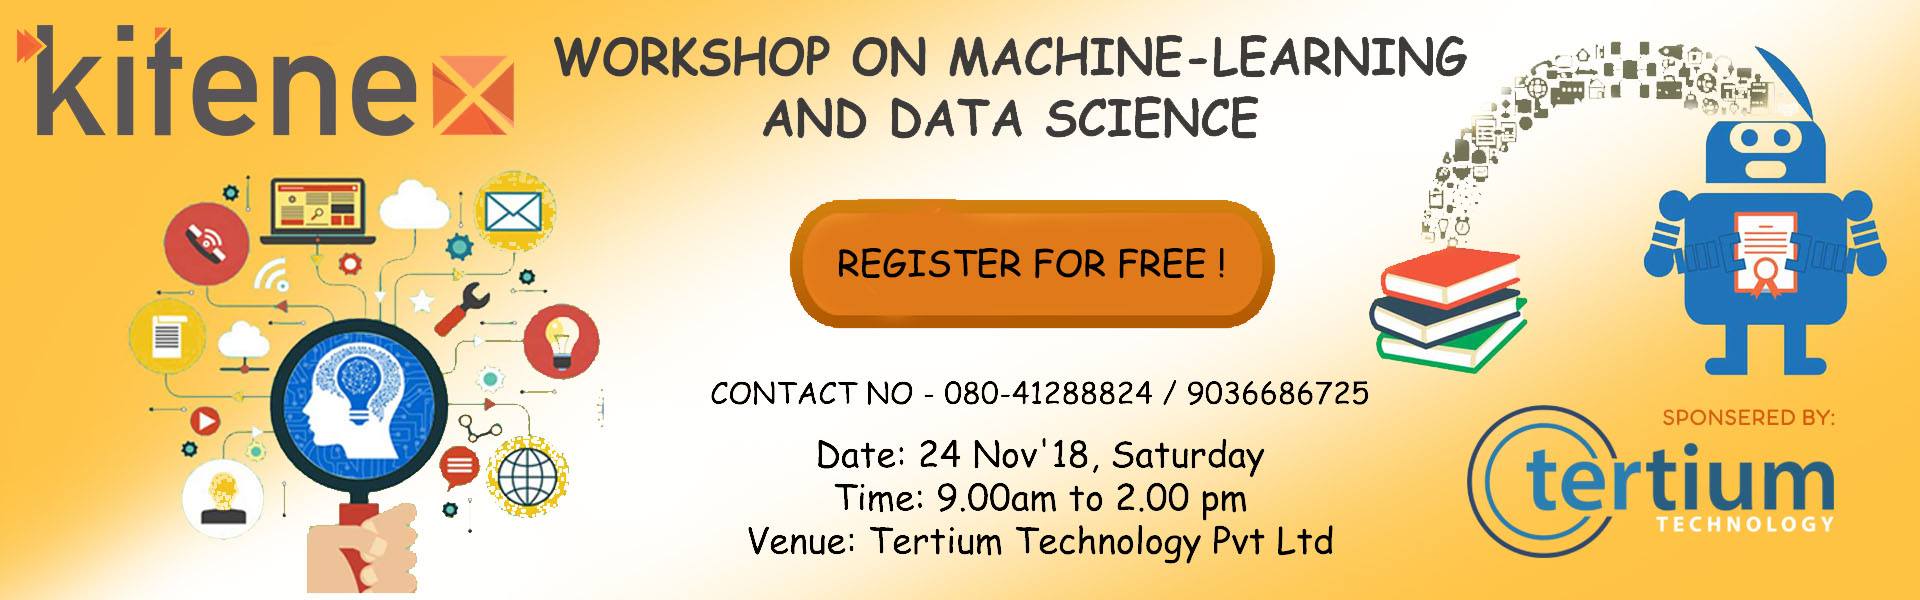 Workshop on Machine Learning and Data Science, Bangalore, Karnataka, India